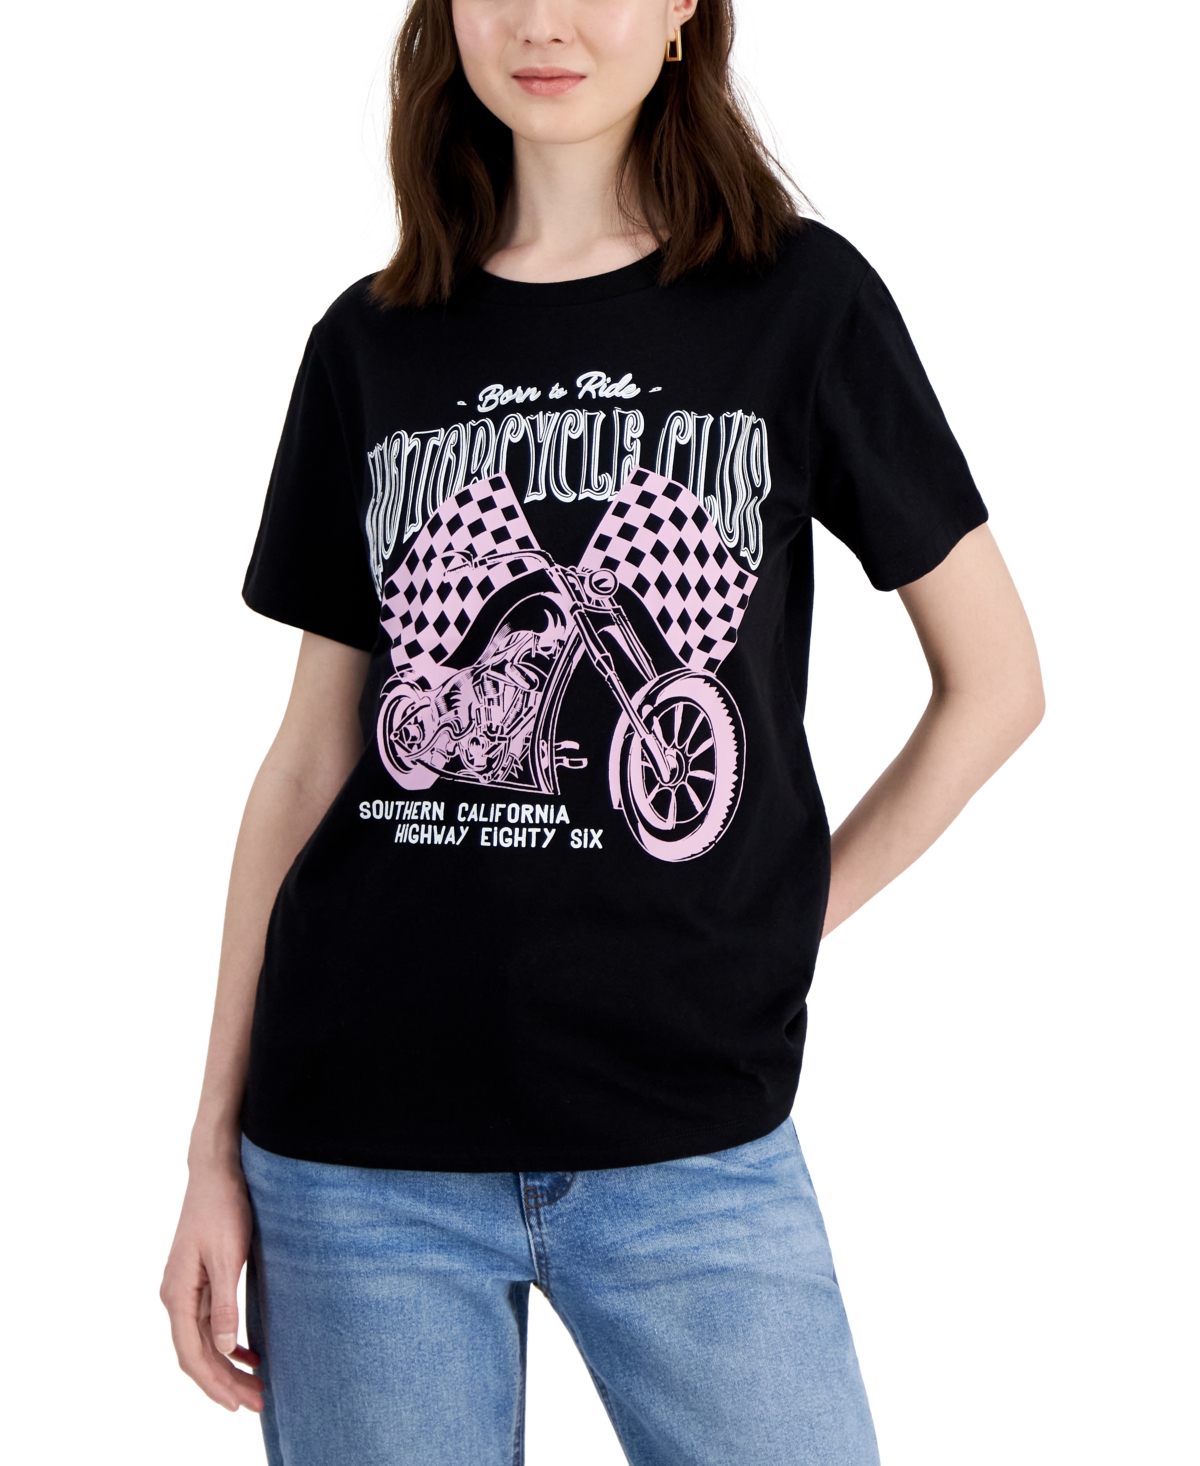 Cotton Motorcycle Club Crewneck Tee - Black